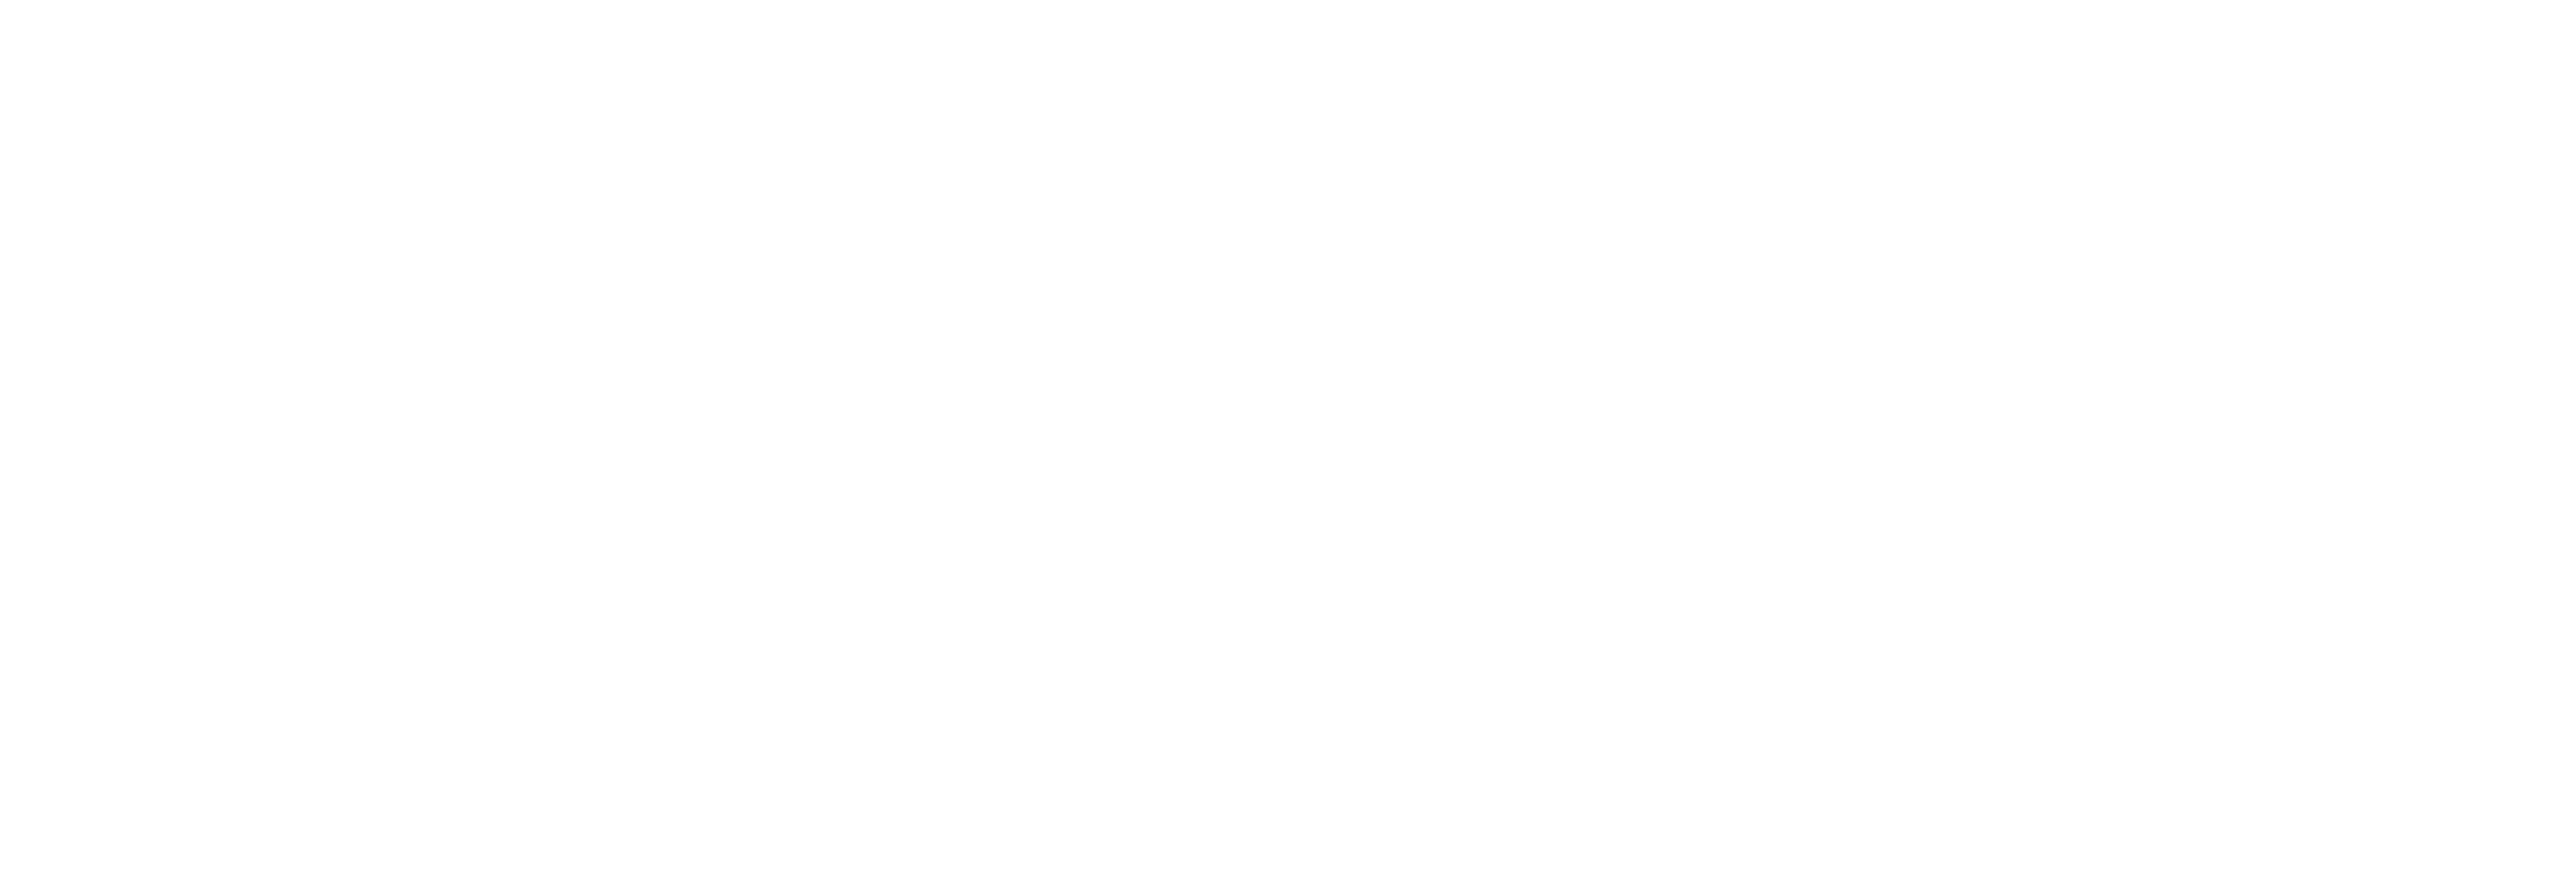 RS EDV & Network Solutions e.U. Logo